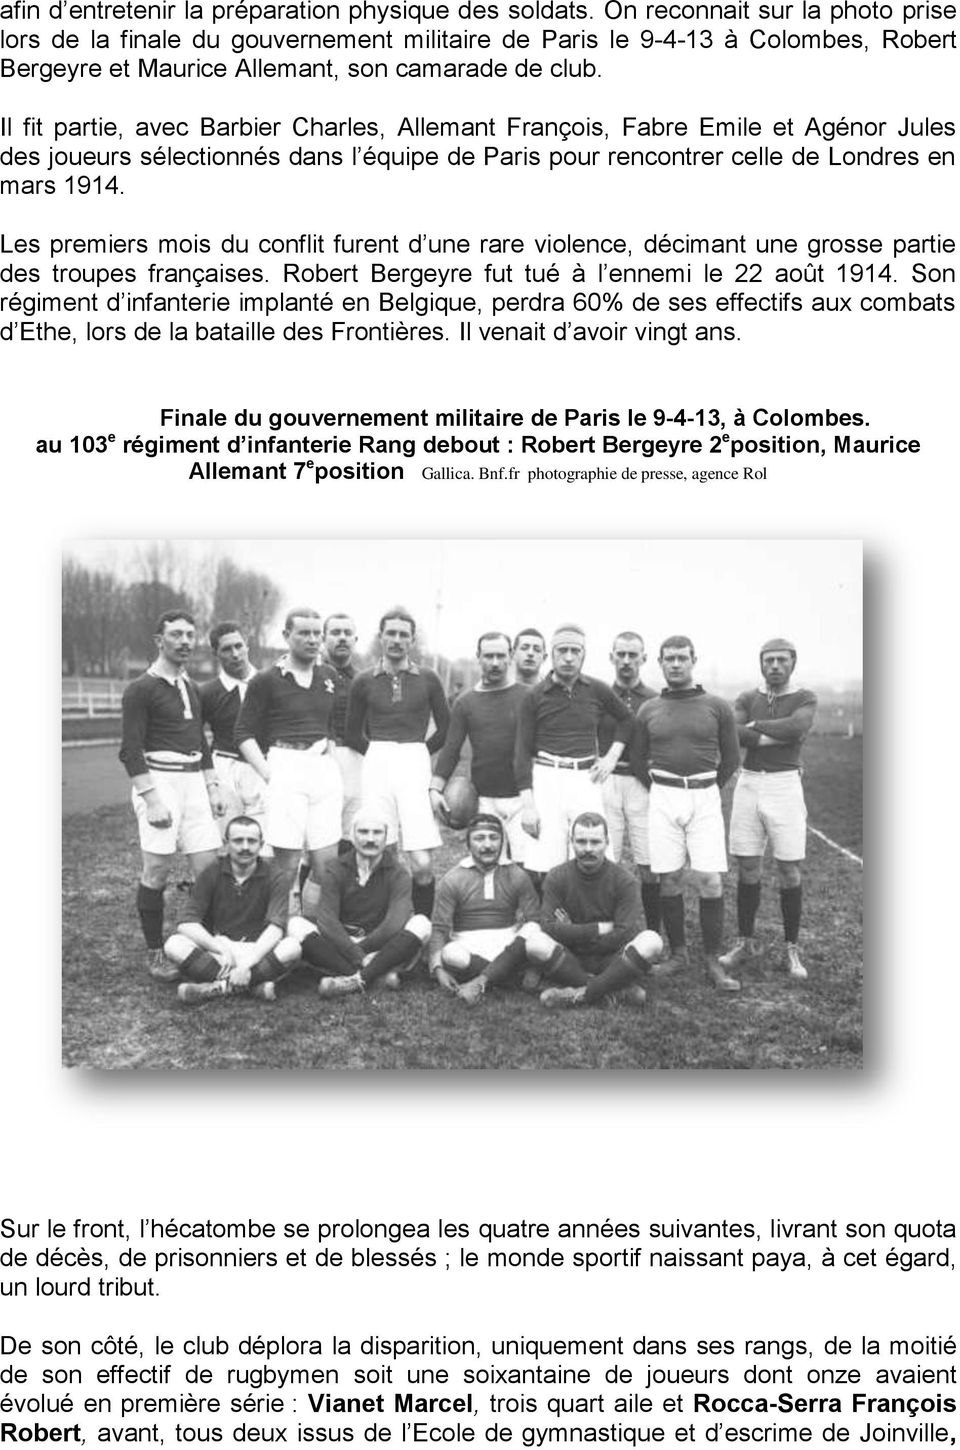 Il fit partie, avec Barbier Charles, Allemant François, Fabre Emile et Agénor Jules des joueurs sélectionnés dans l équipe de Paris pour rencontrer celle de Londres en mars 1914.